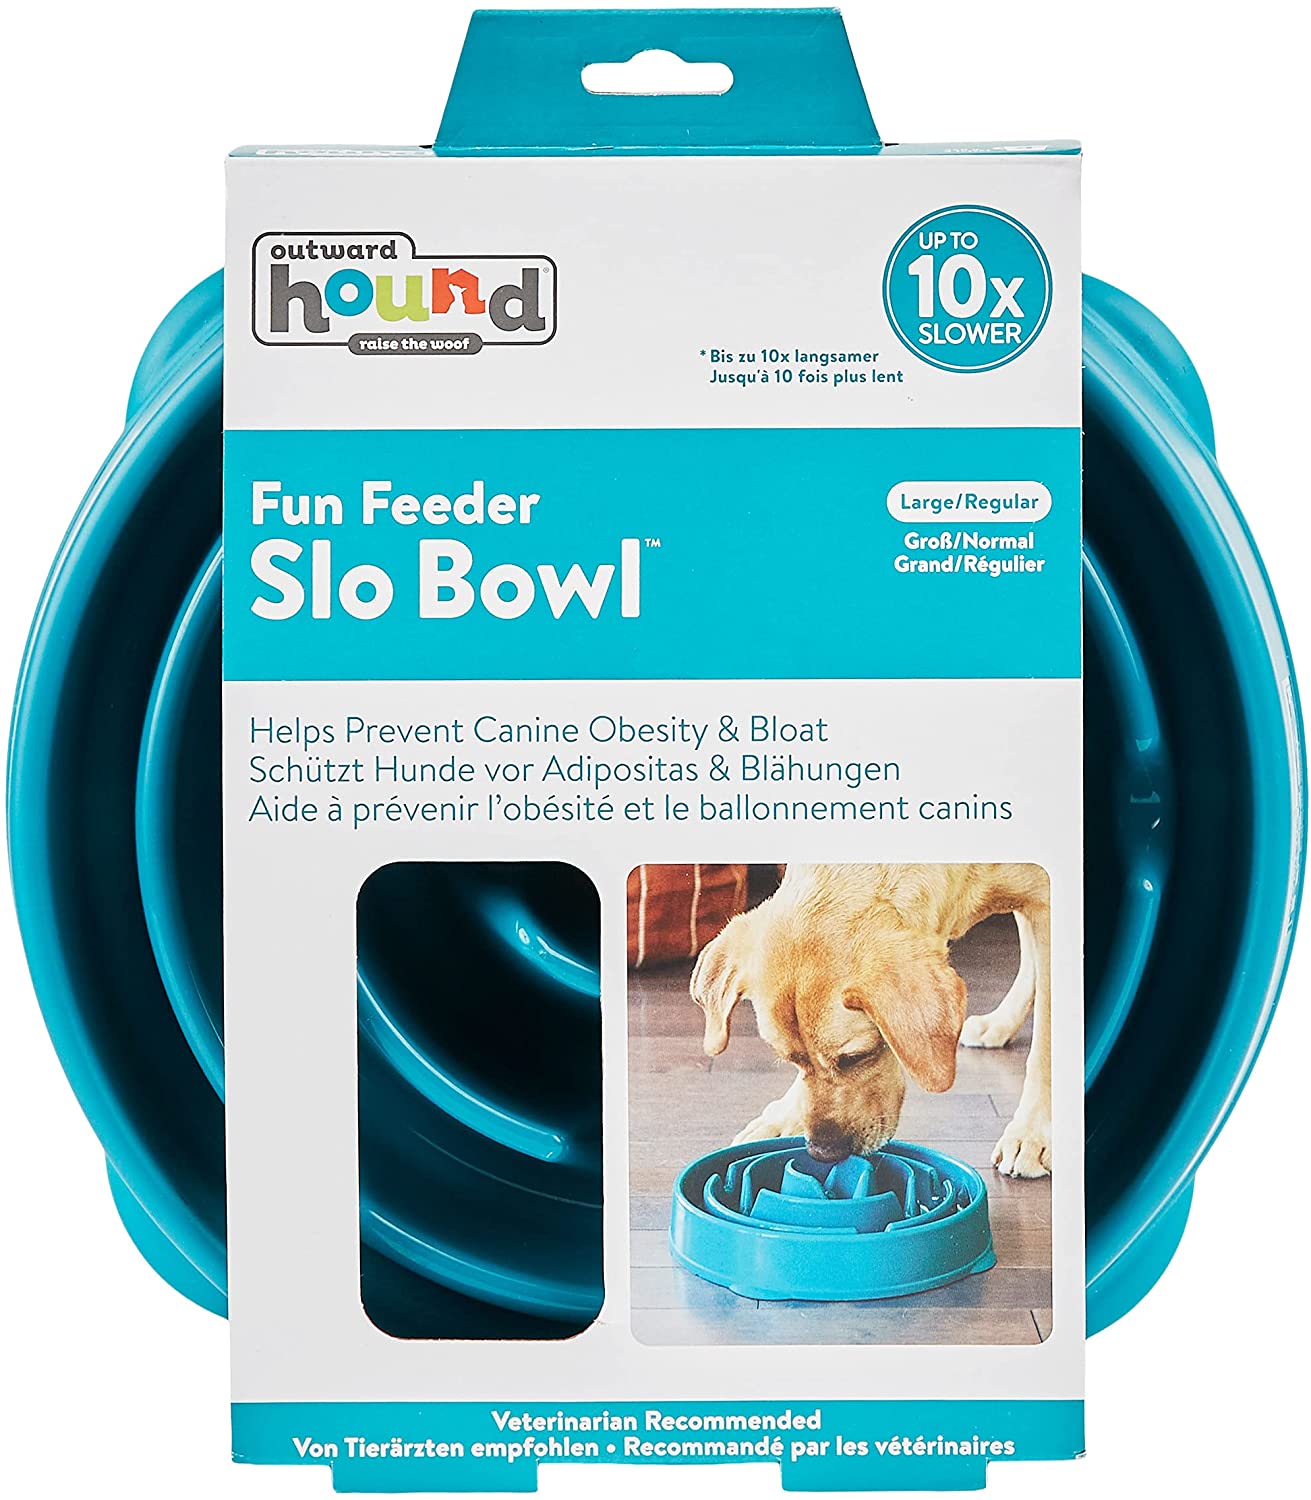 Outward Hound - Divertido alimentador Slo Bowl, alimentador lento